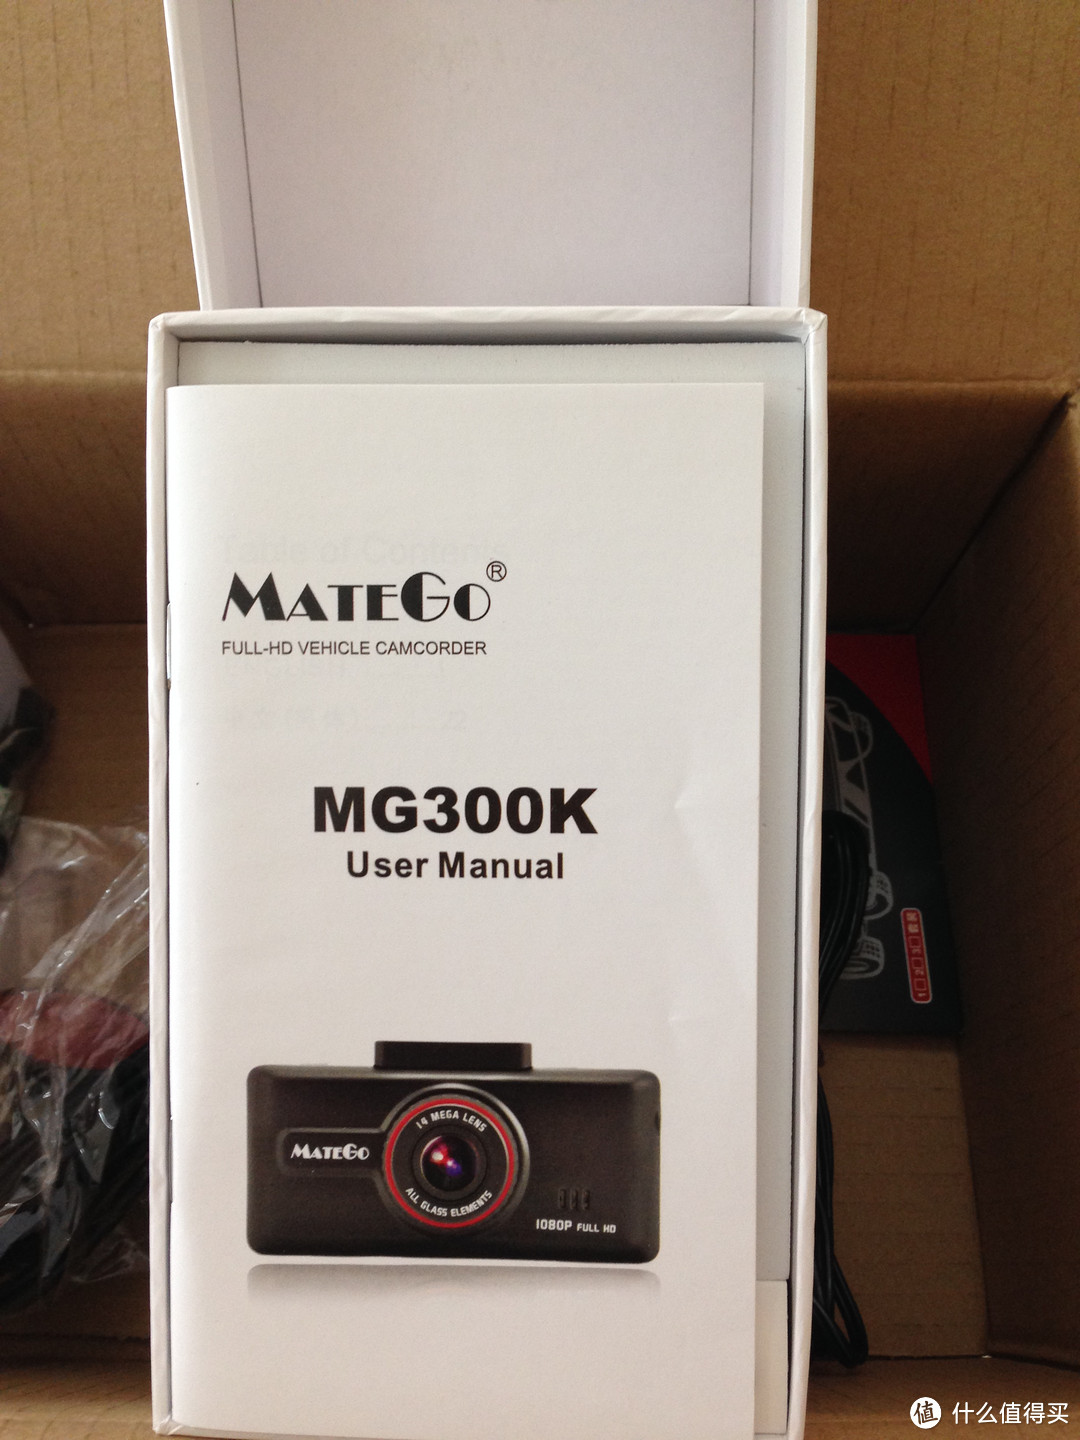 入手并自行安装MATEGO MG300K Plus 行车记录仪